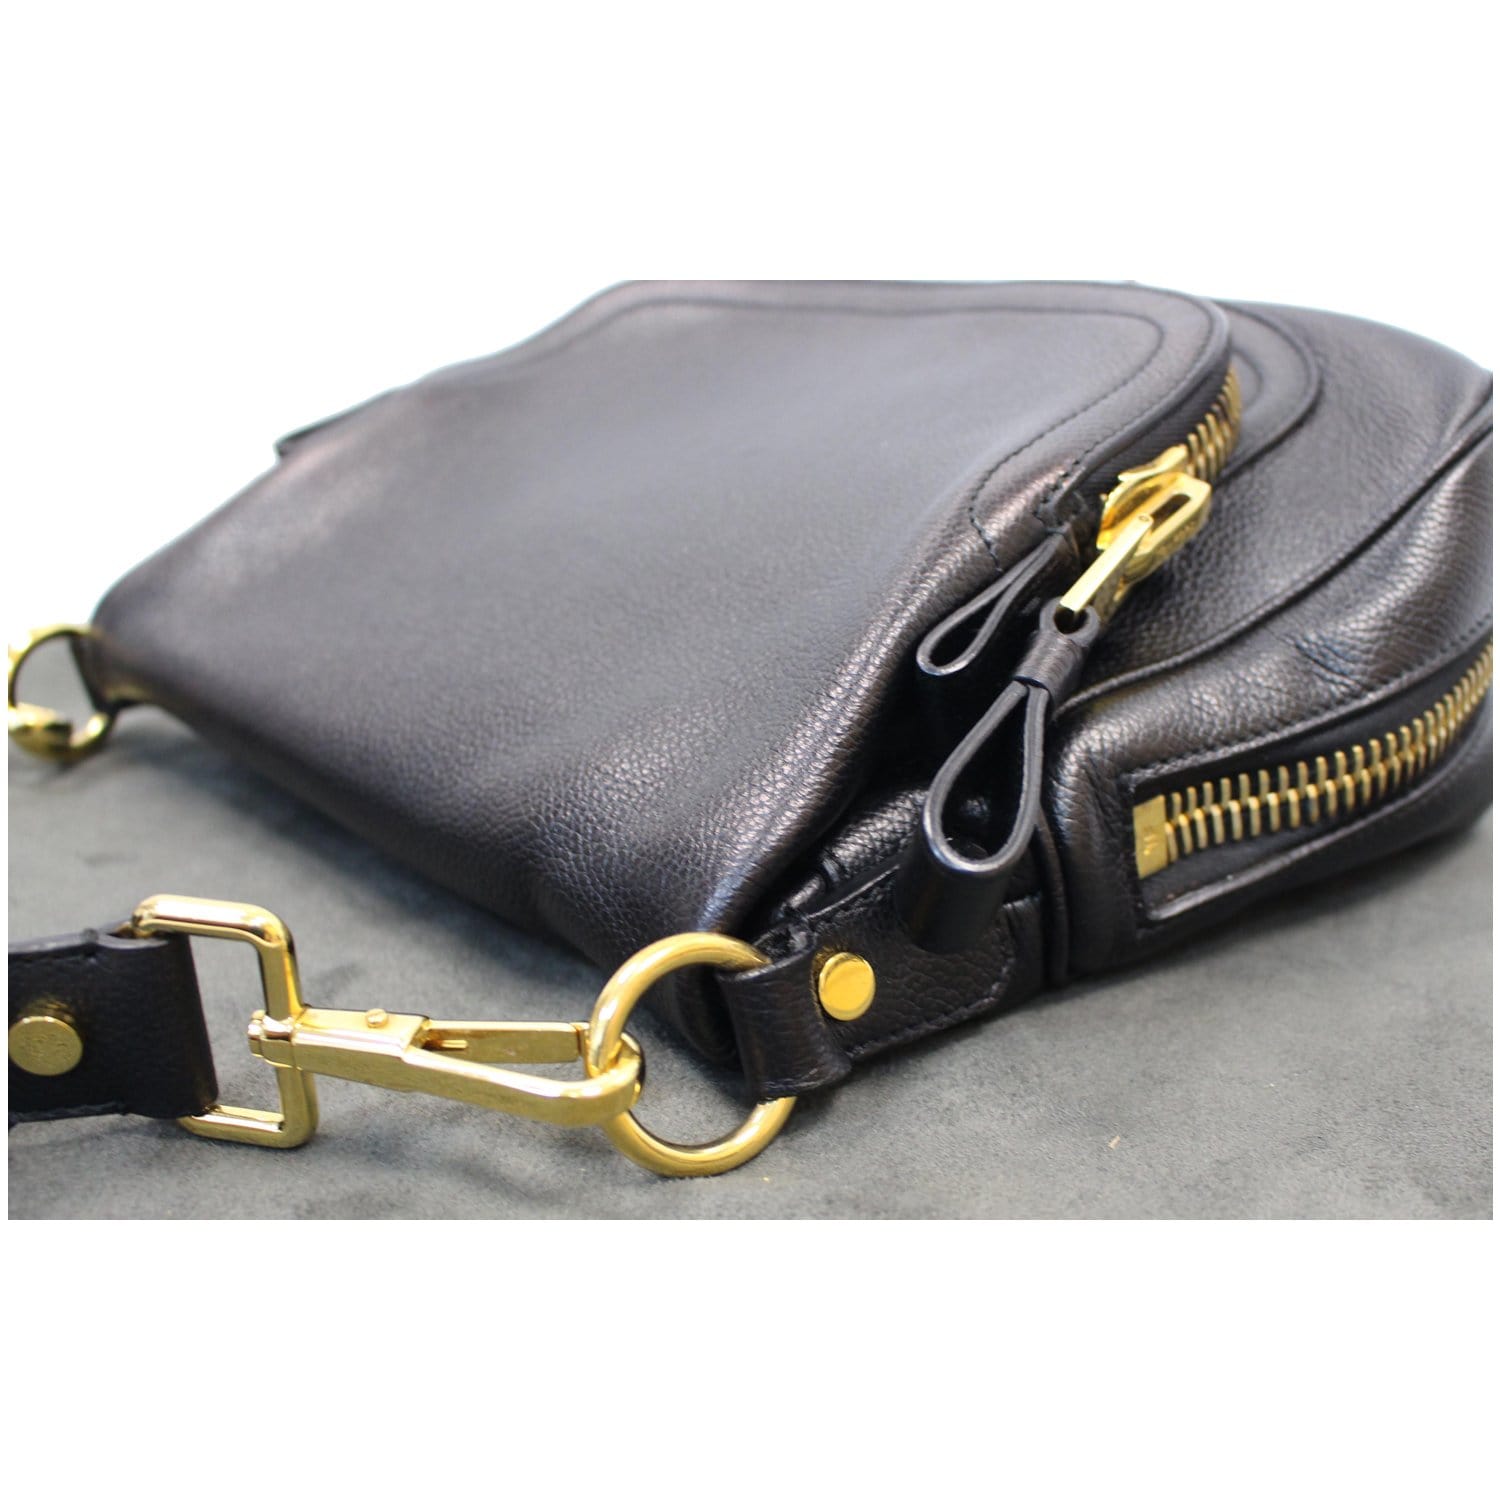 Black Leather Tom Ford Inspired Jennifer Purse Bag 